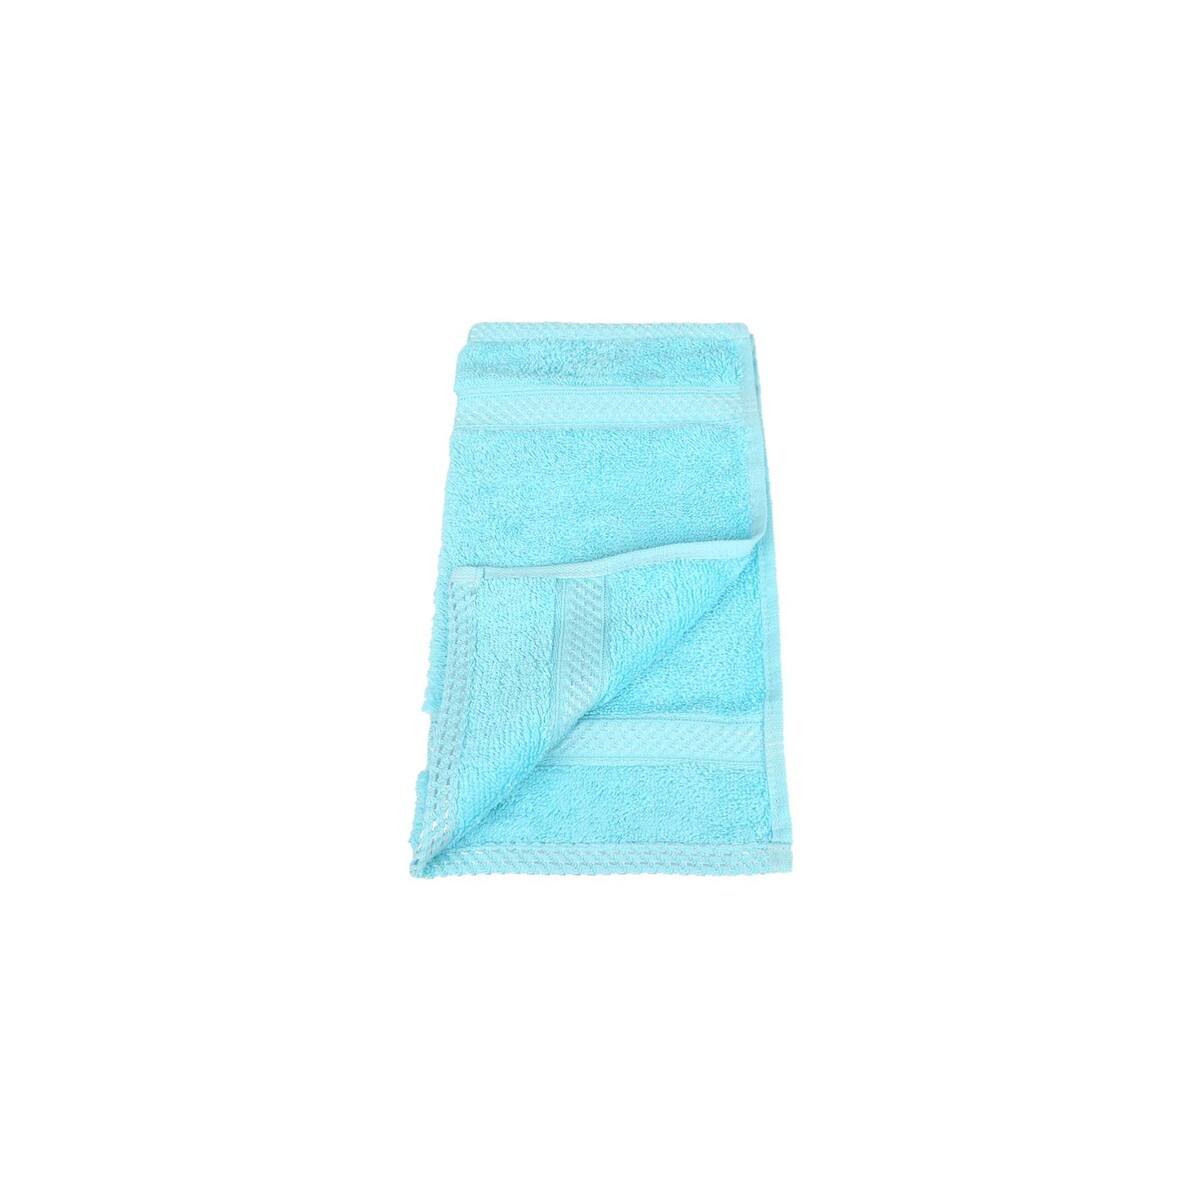 Laura Collection Face Towel Aquea Size: W30 x L30cm